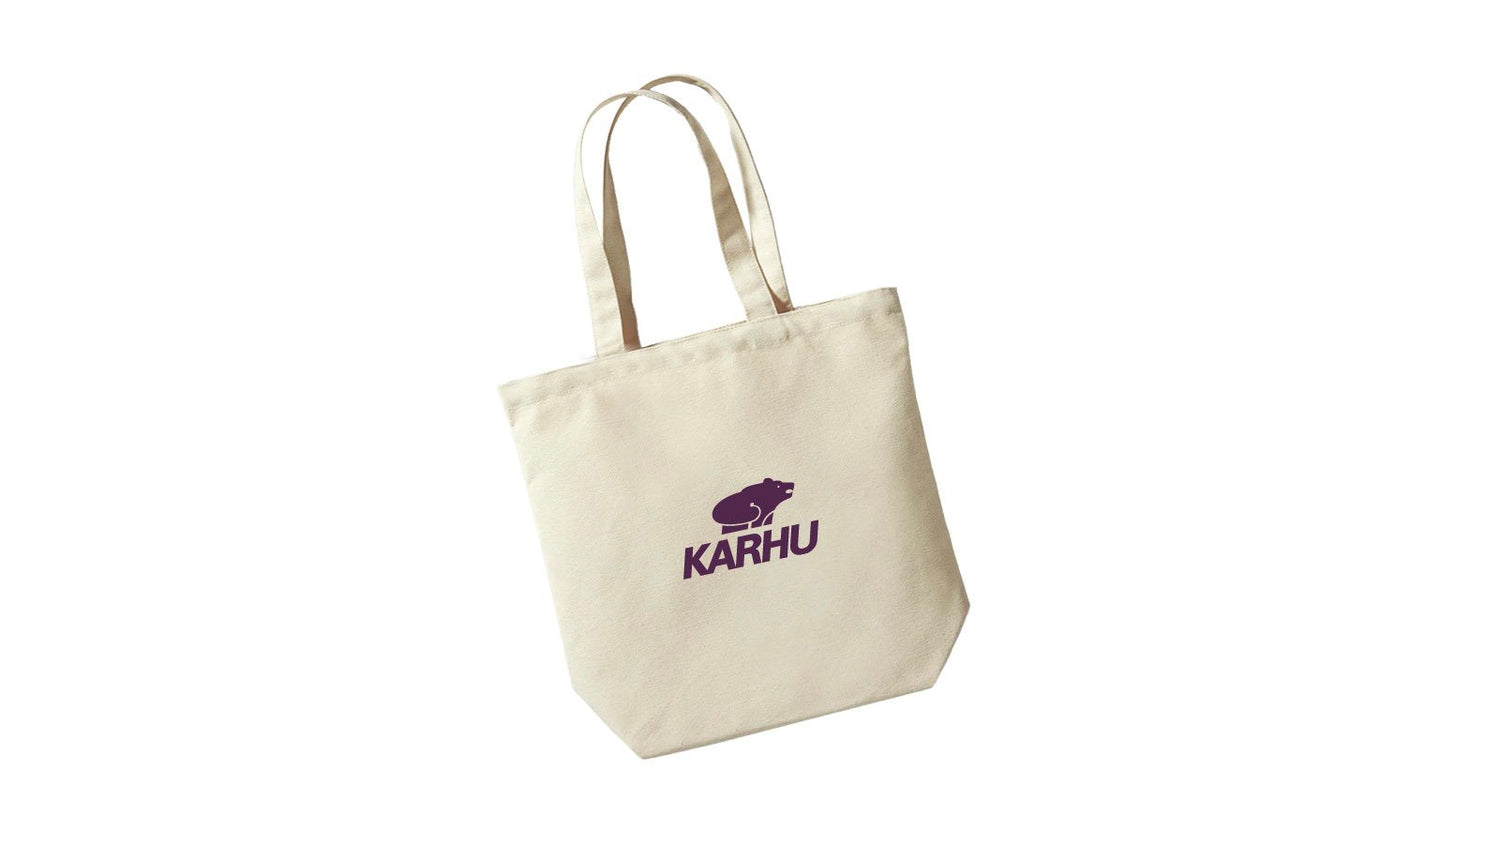 KARHU branded tote bag